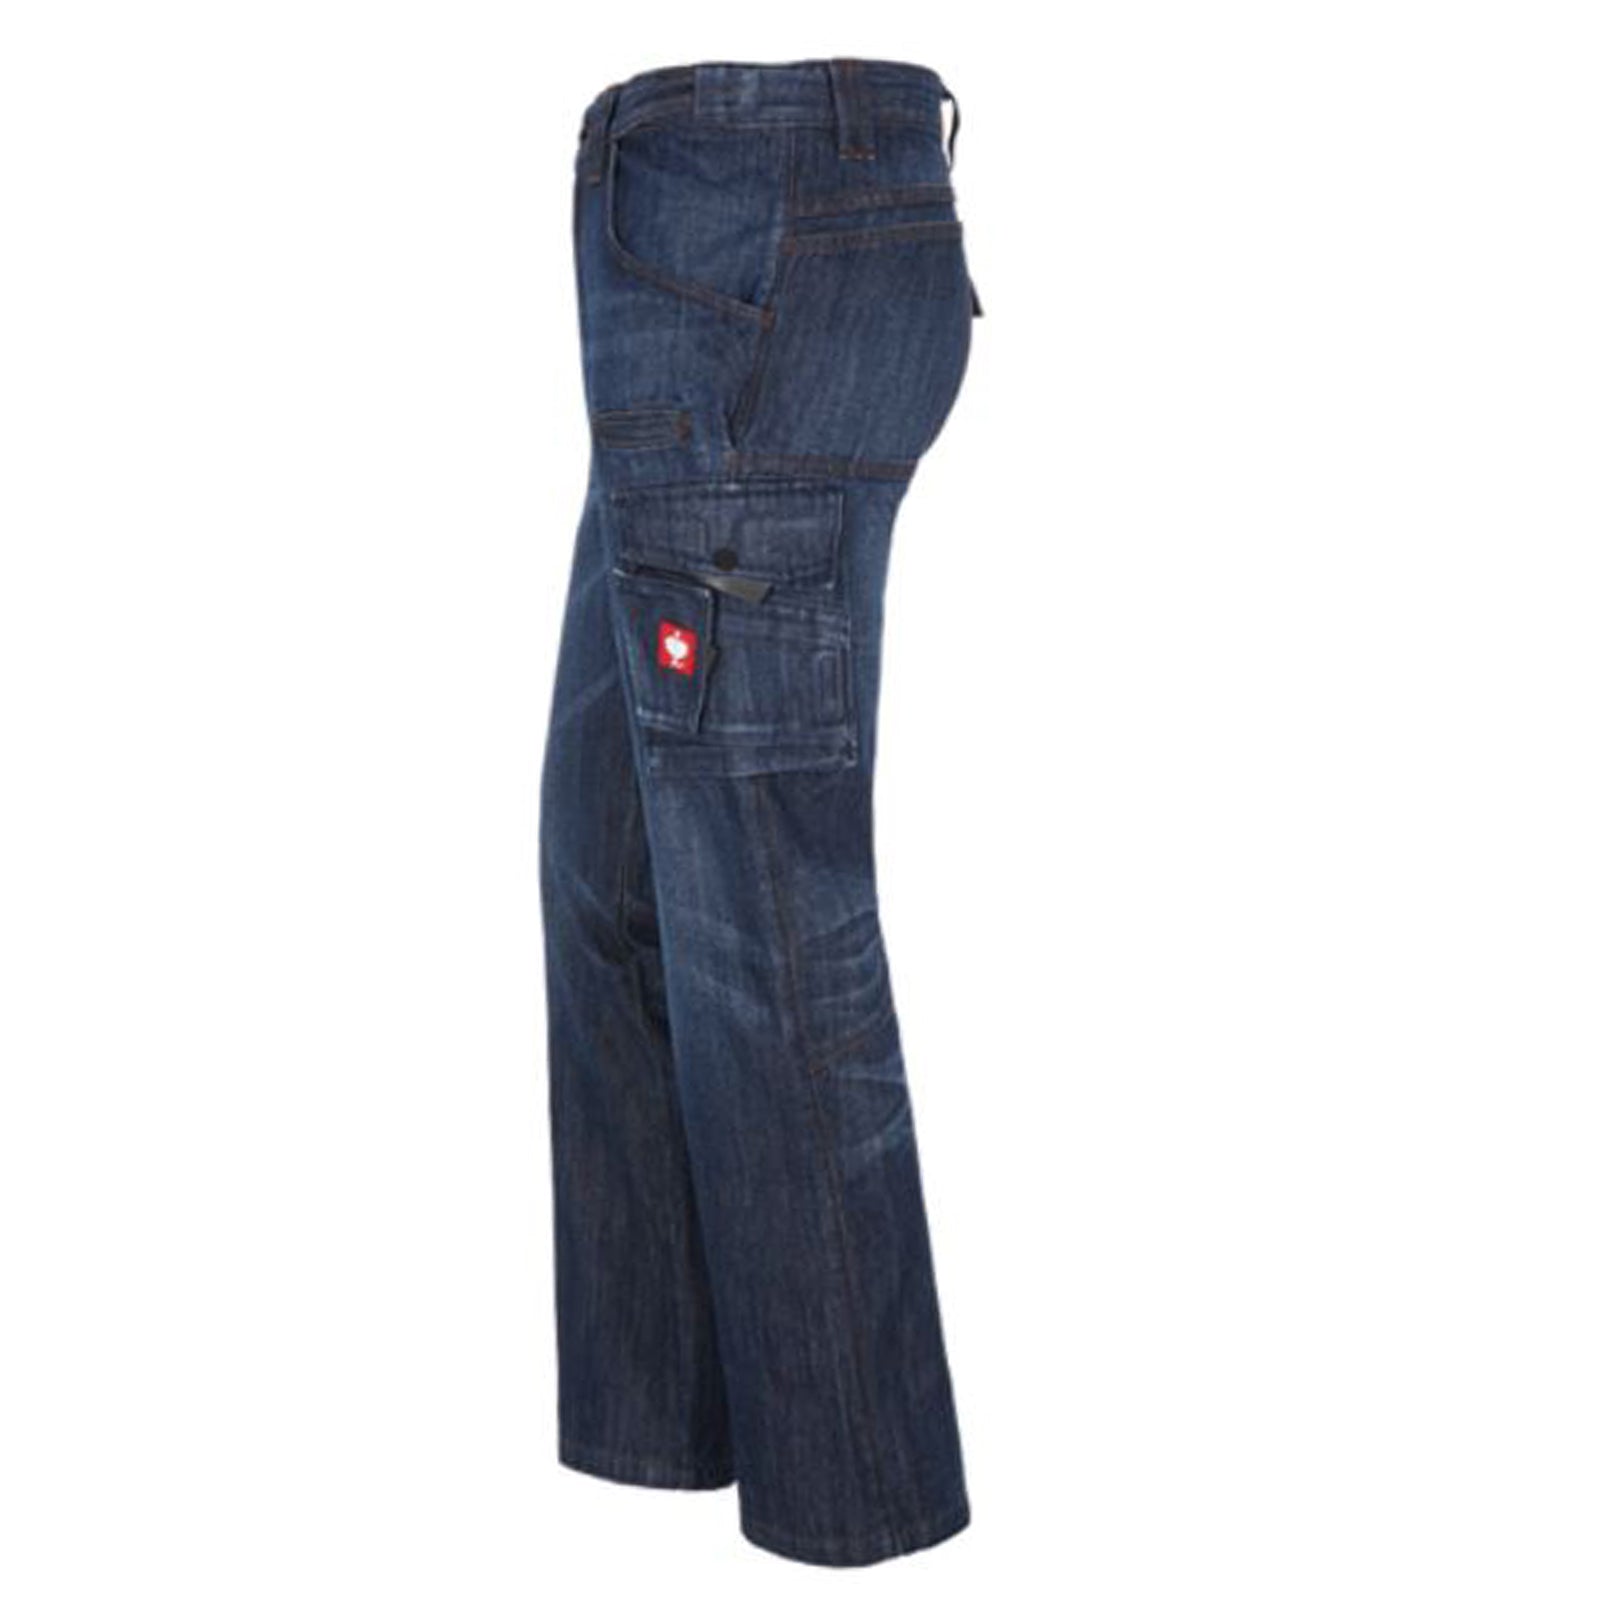 engelbert strauss e.s. Worker-Jeans Trousers Pants German Workwear